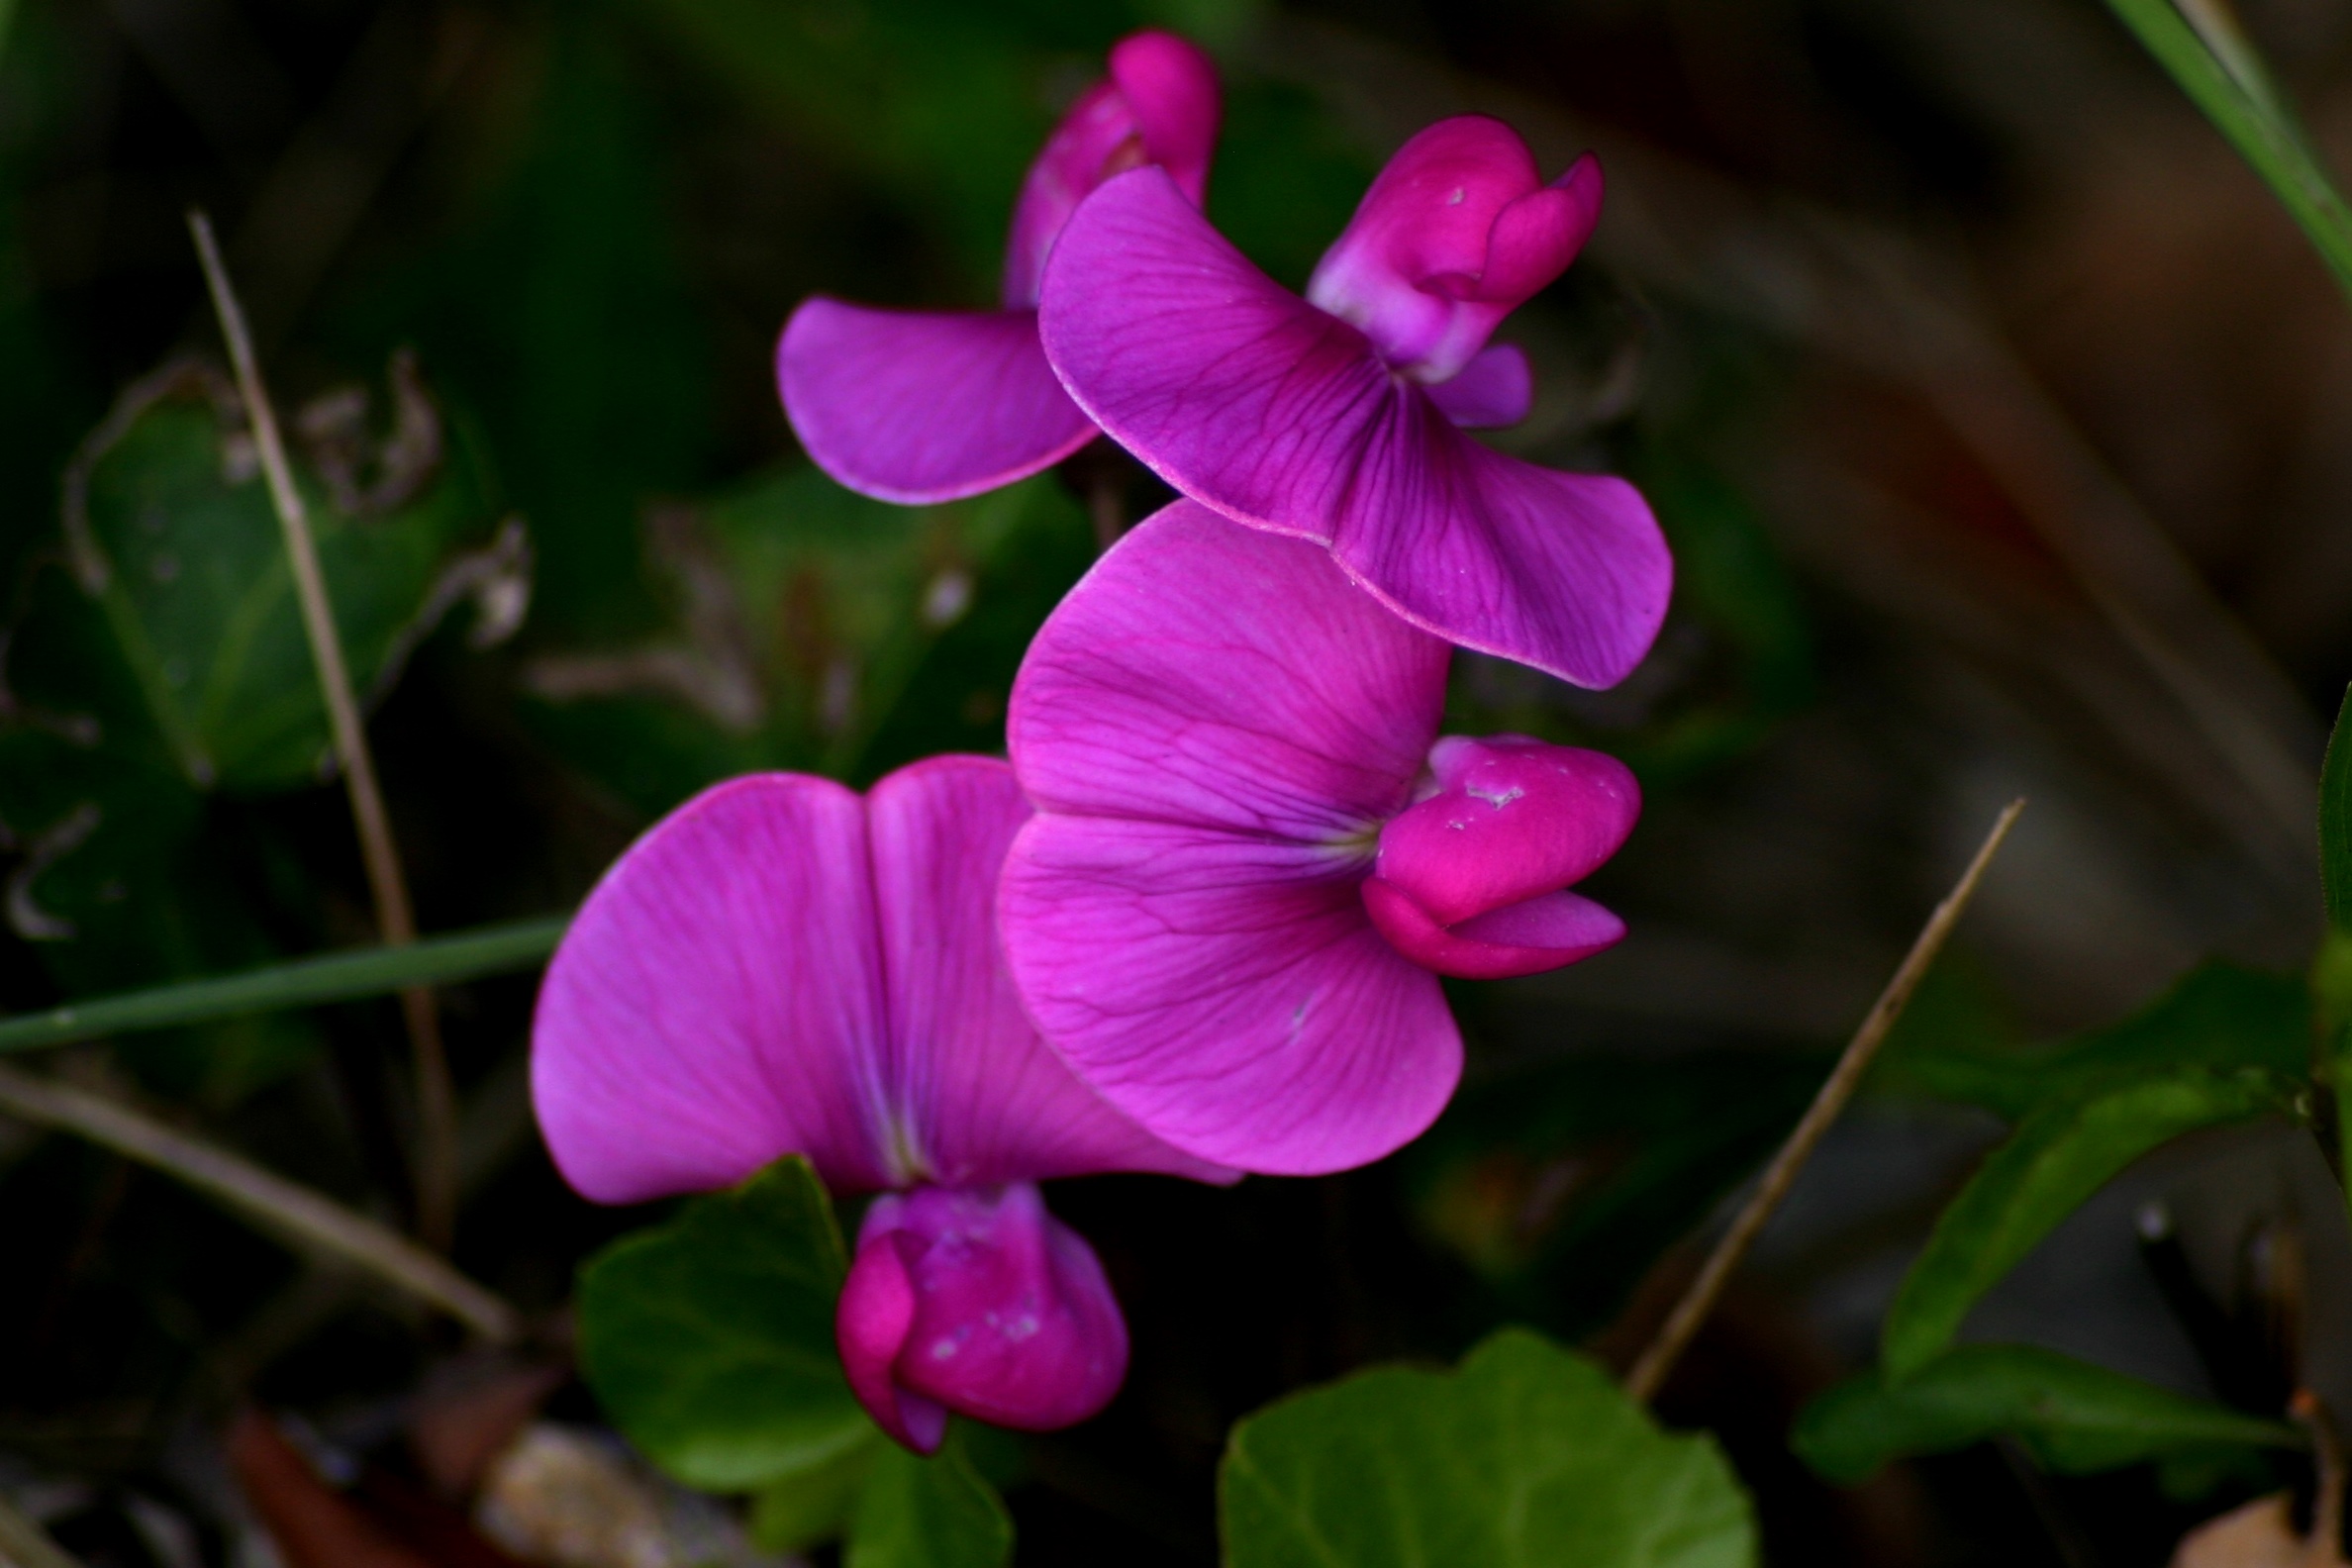 the violet flower...